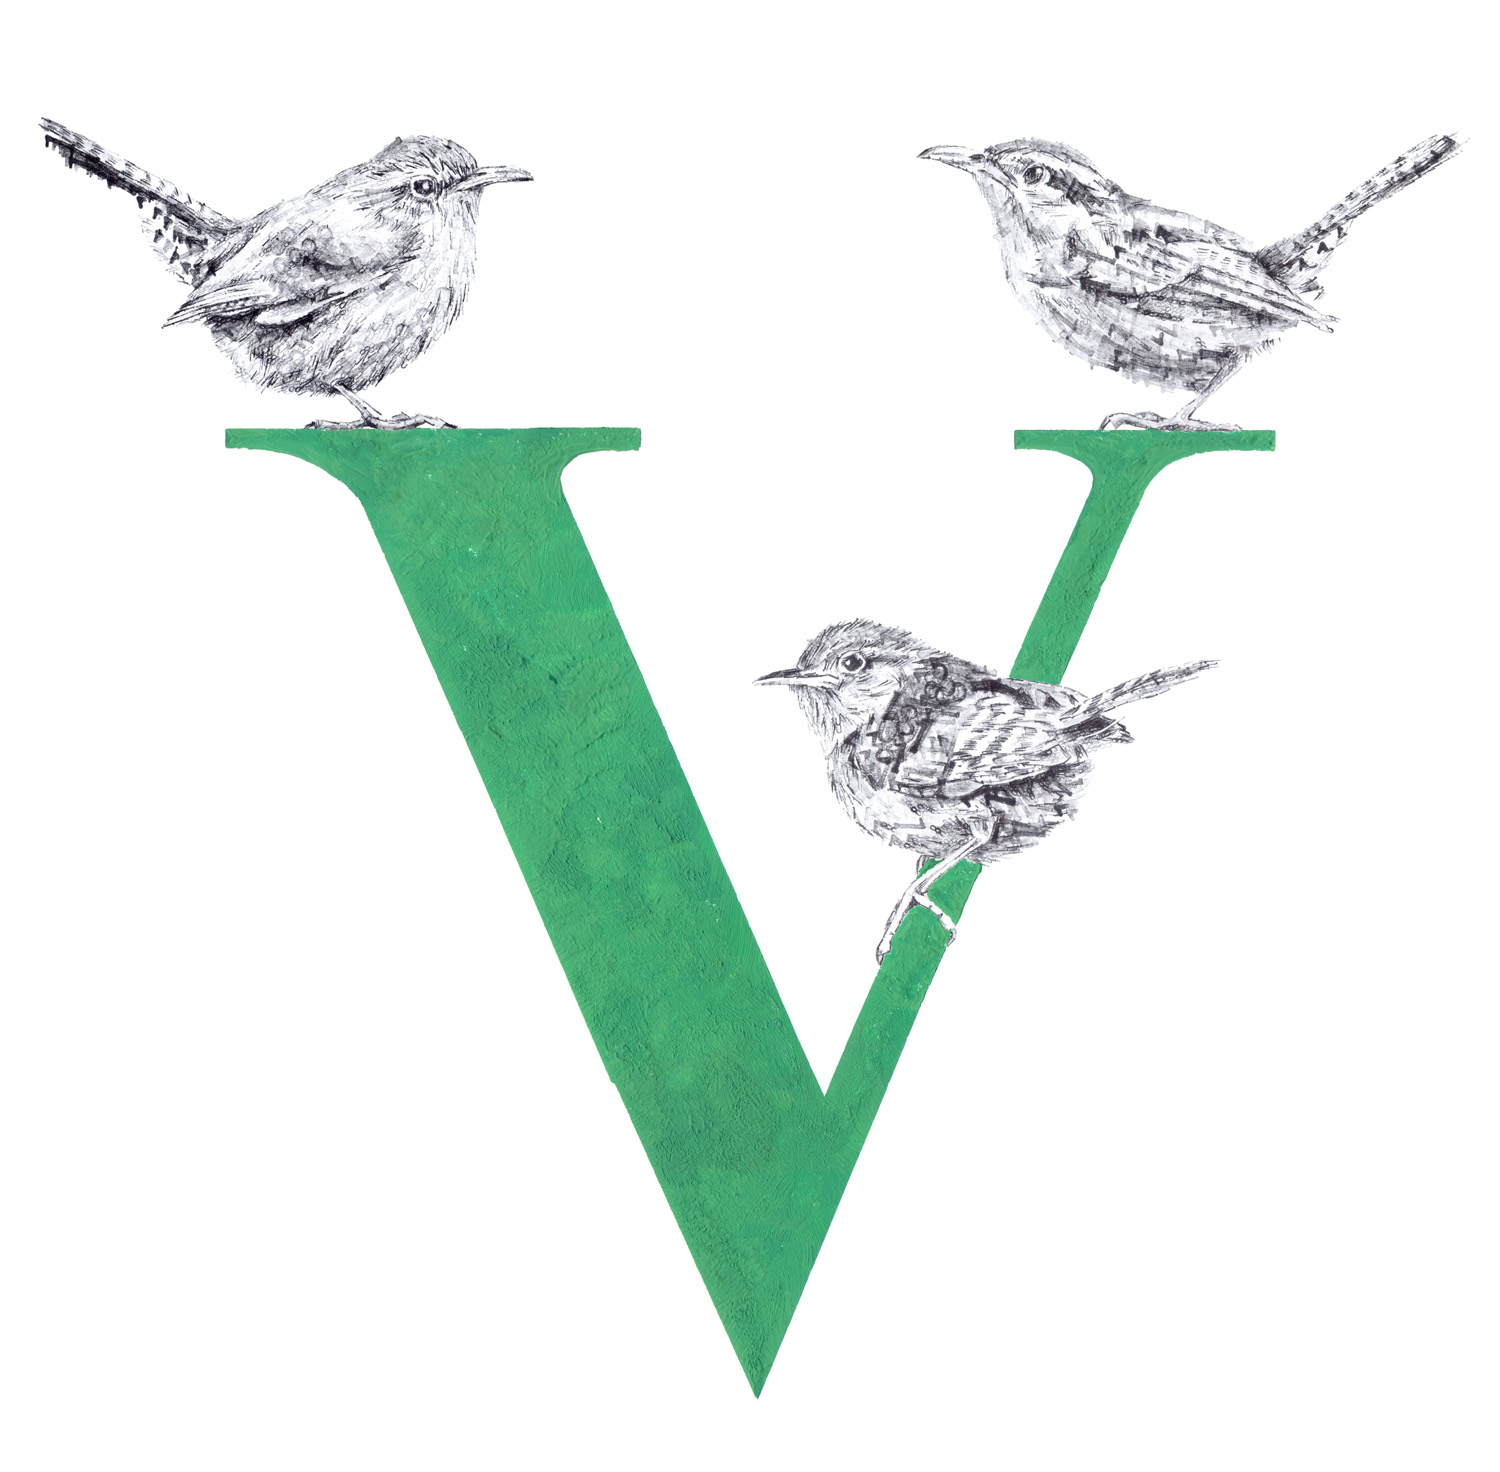 V für Vogel, 2017, date stamp and ink on paper, 50 x 50 cm